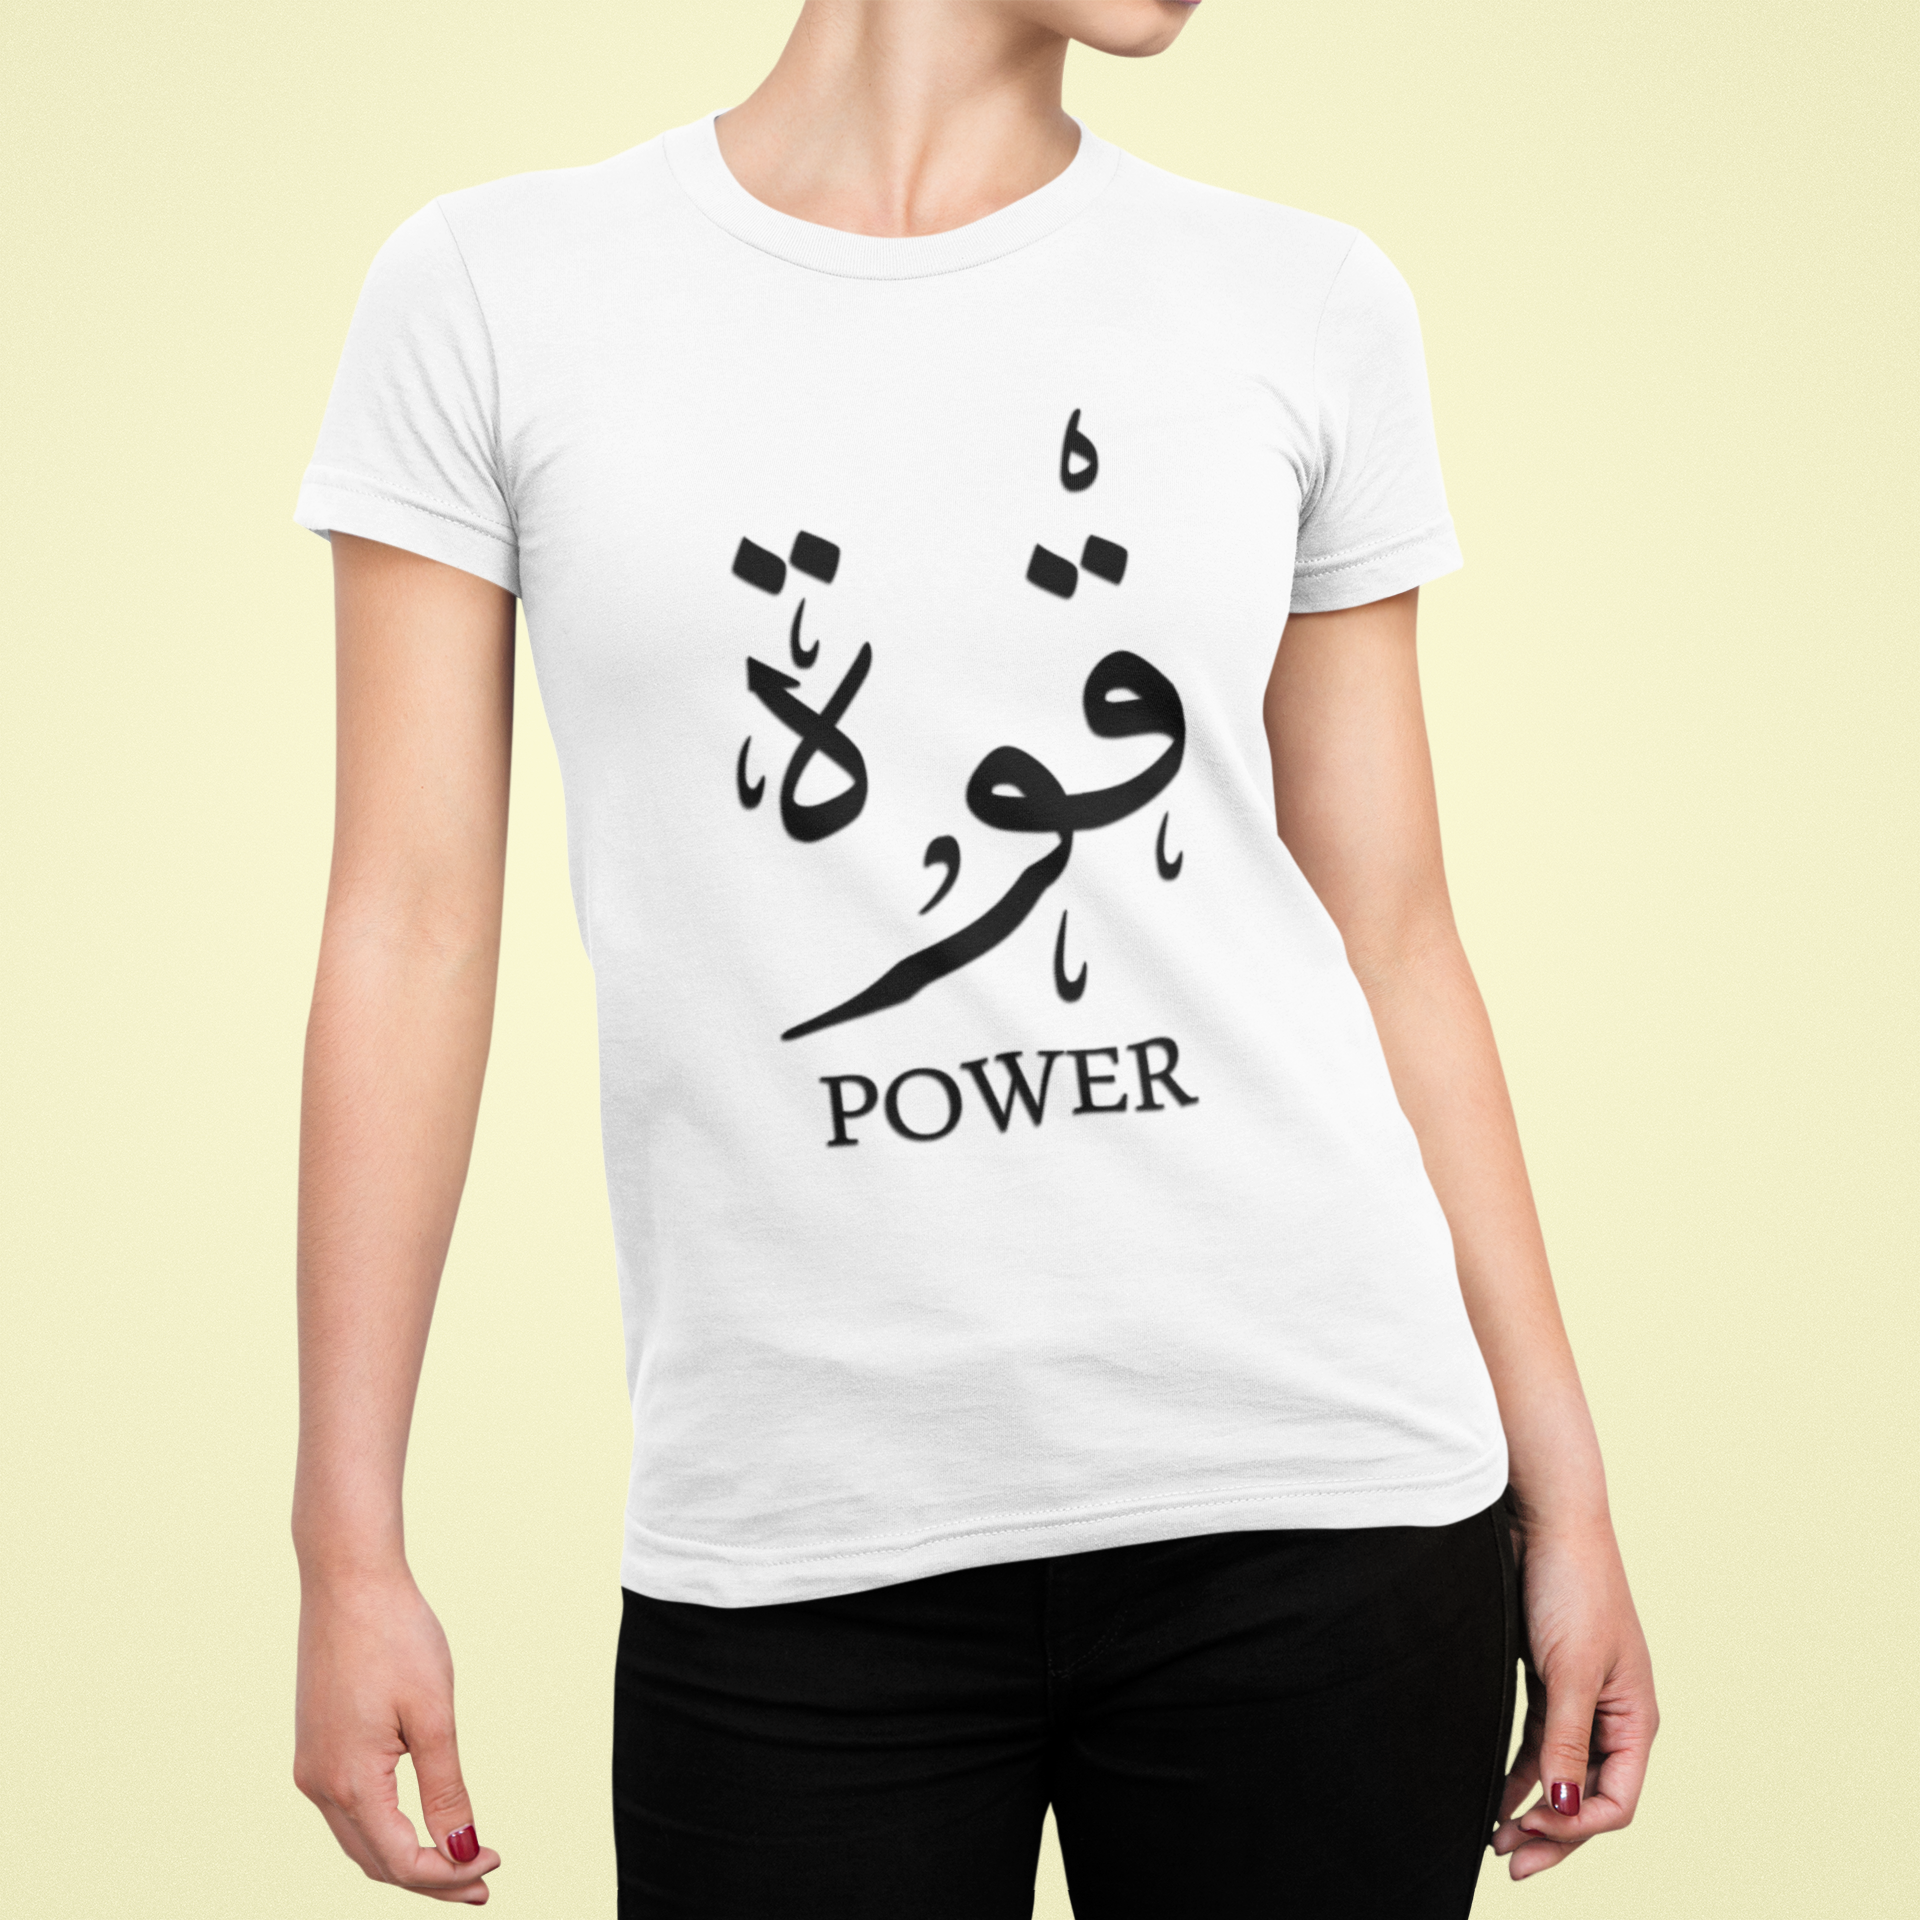 Women's T-Shirt (Power)